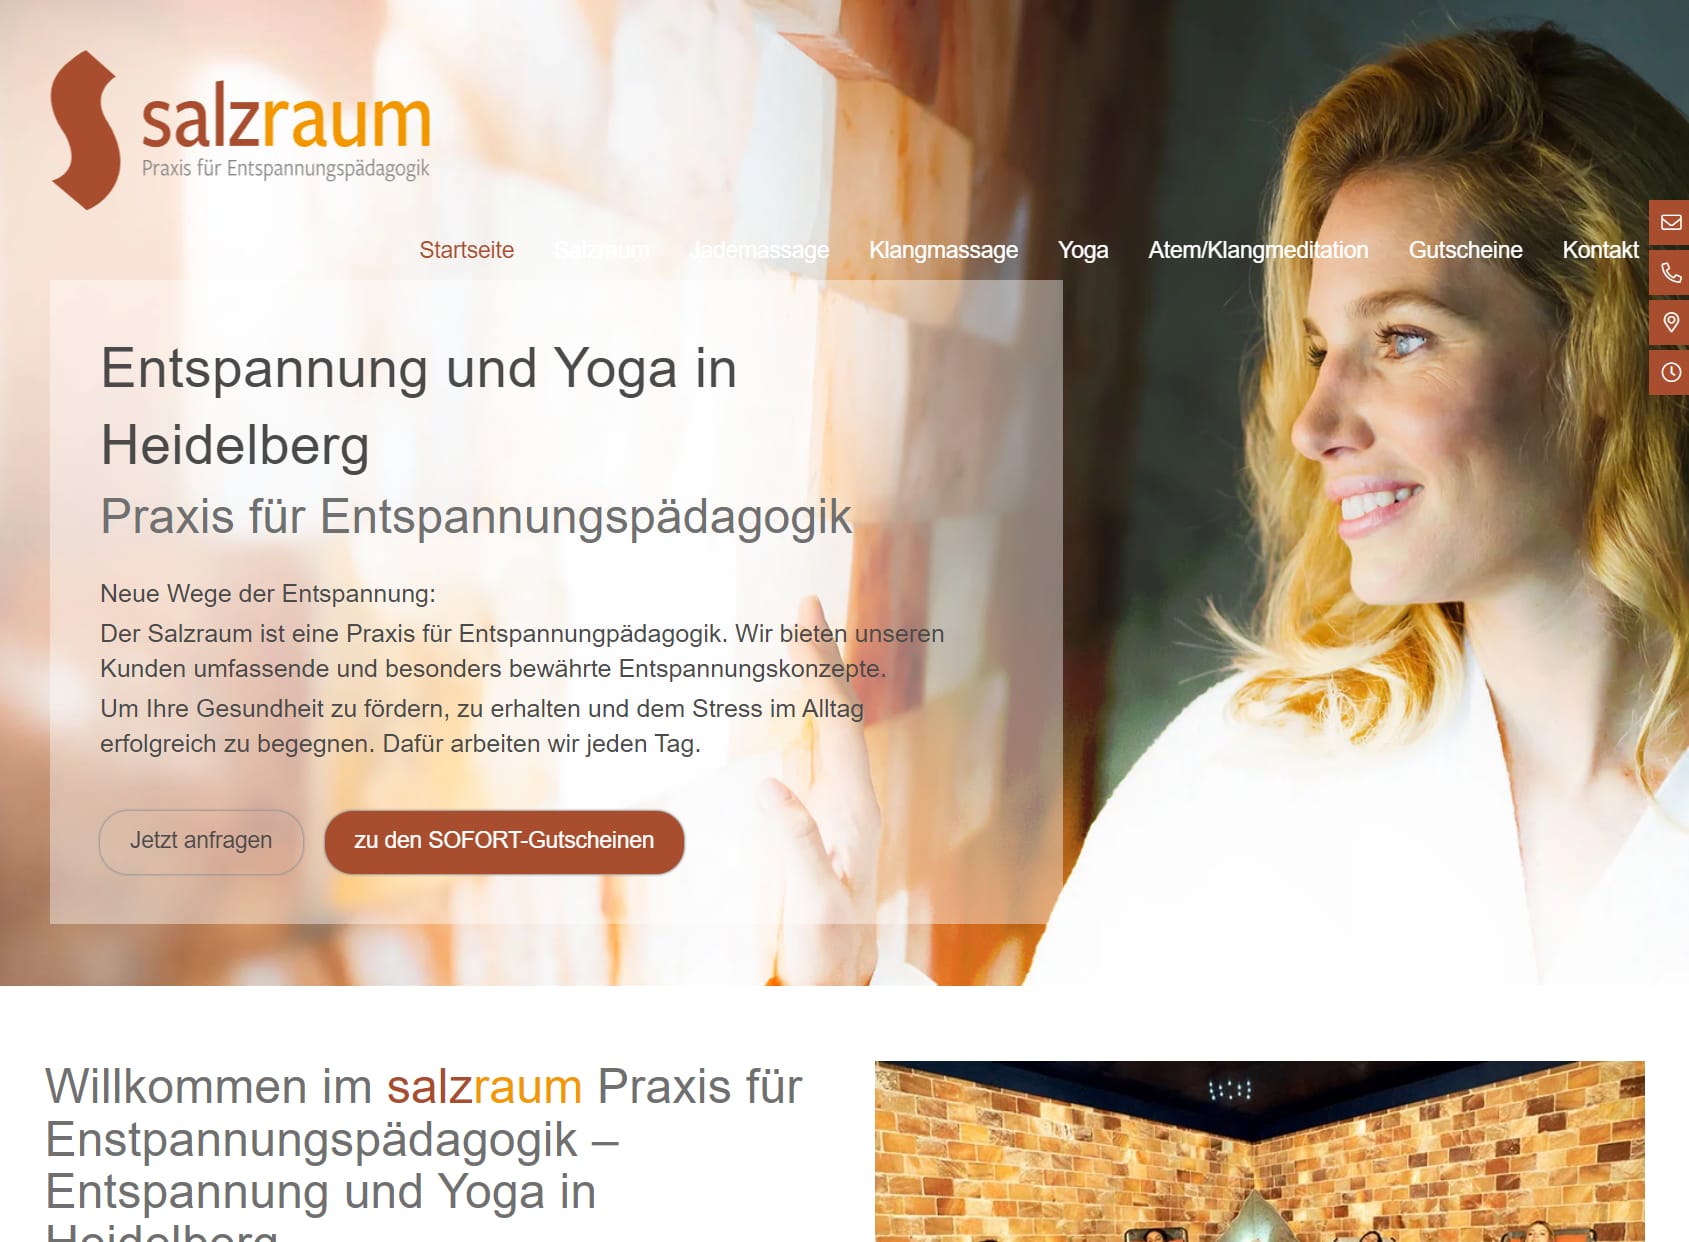 Salzraum - Entspannung, Wellness & Yoga in Heidelberg